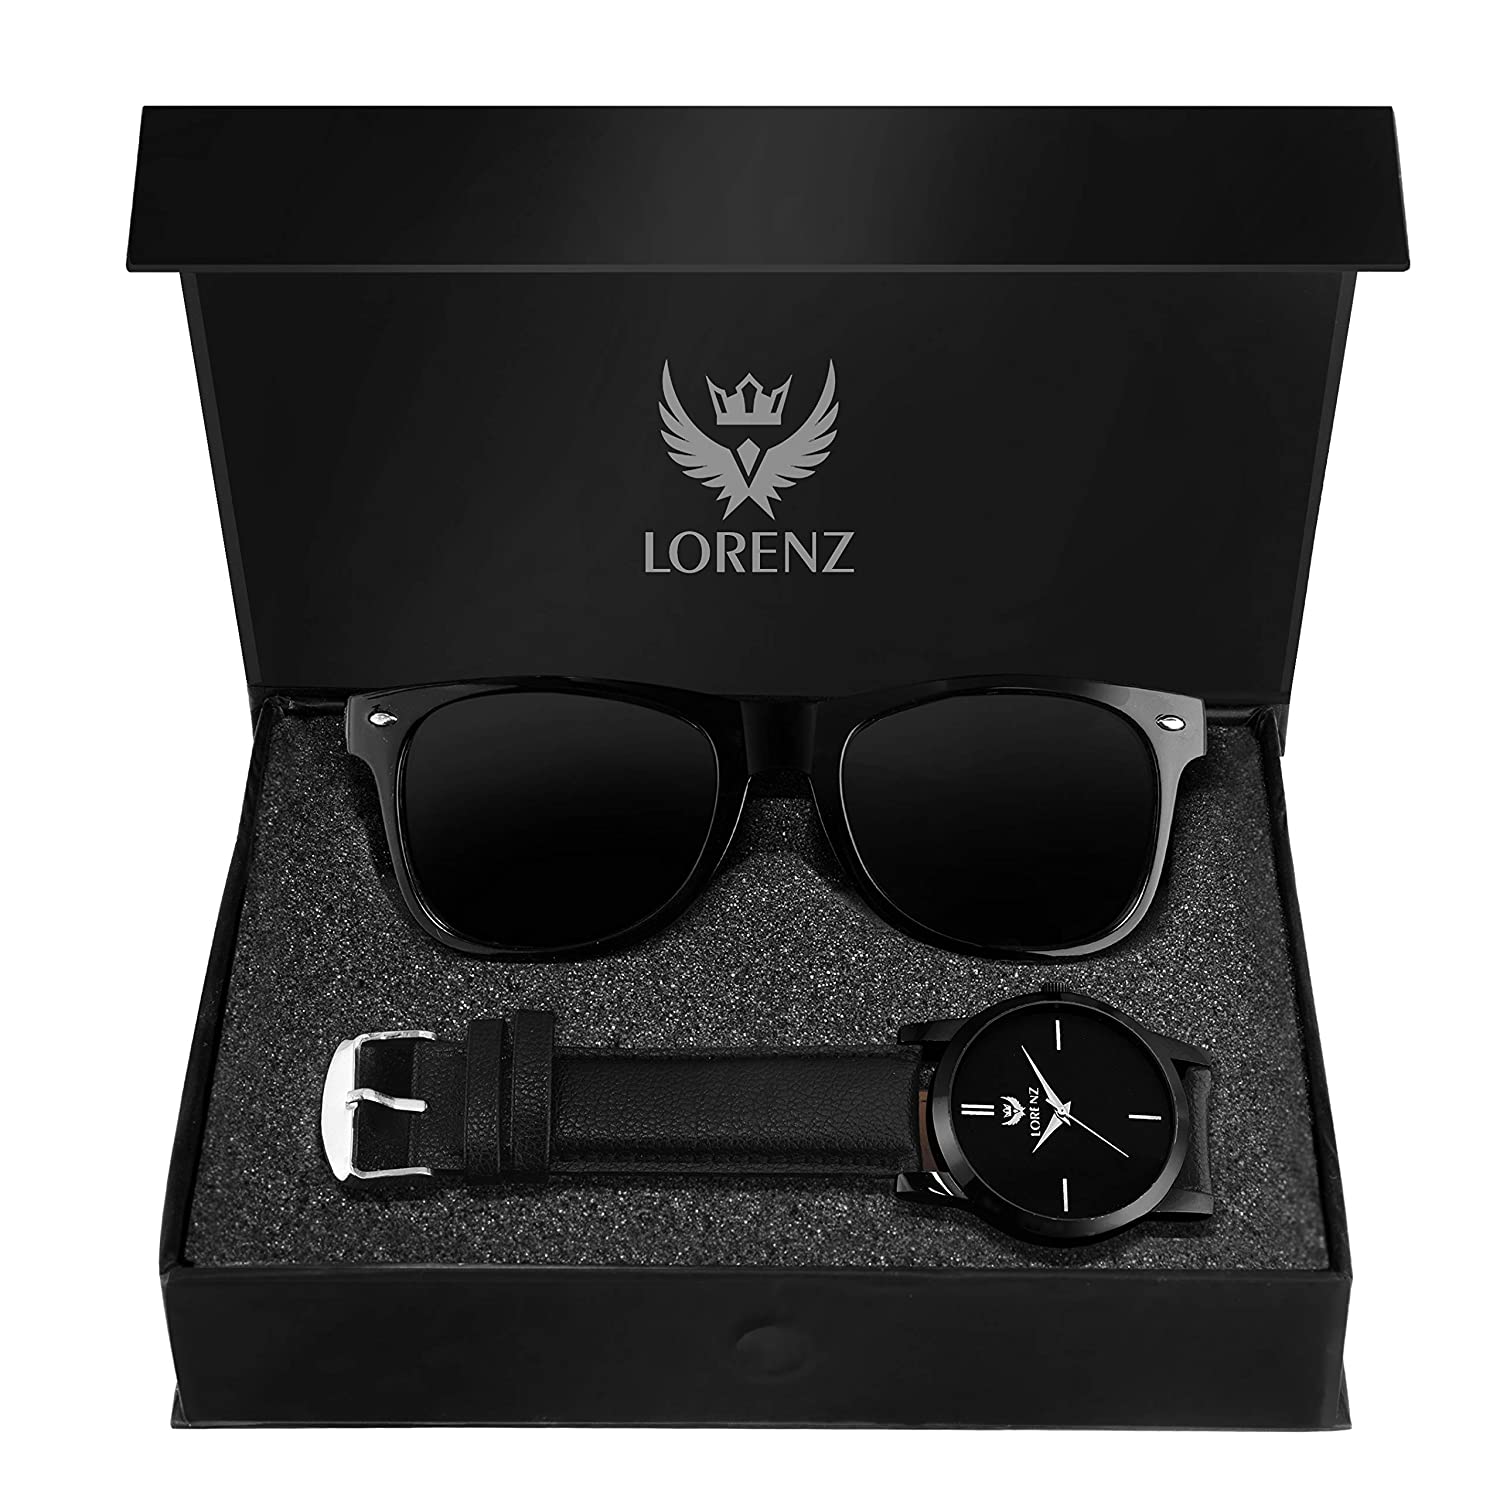 Lorenz analogue men’s watch and sunglasses combo gift set